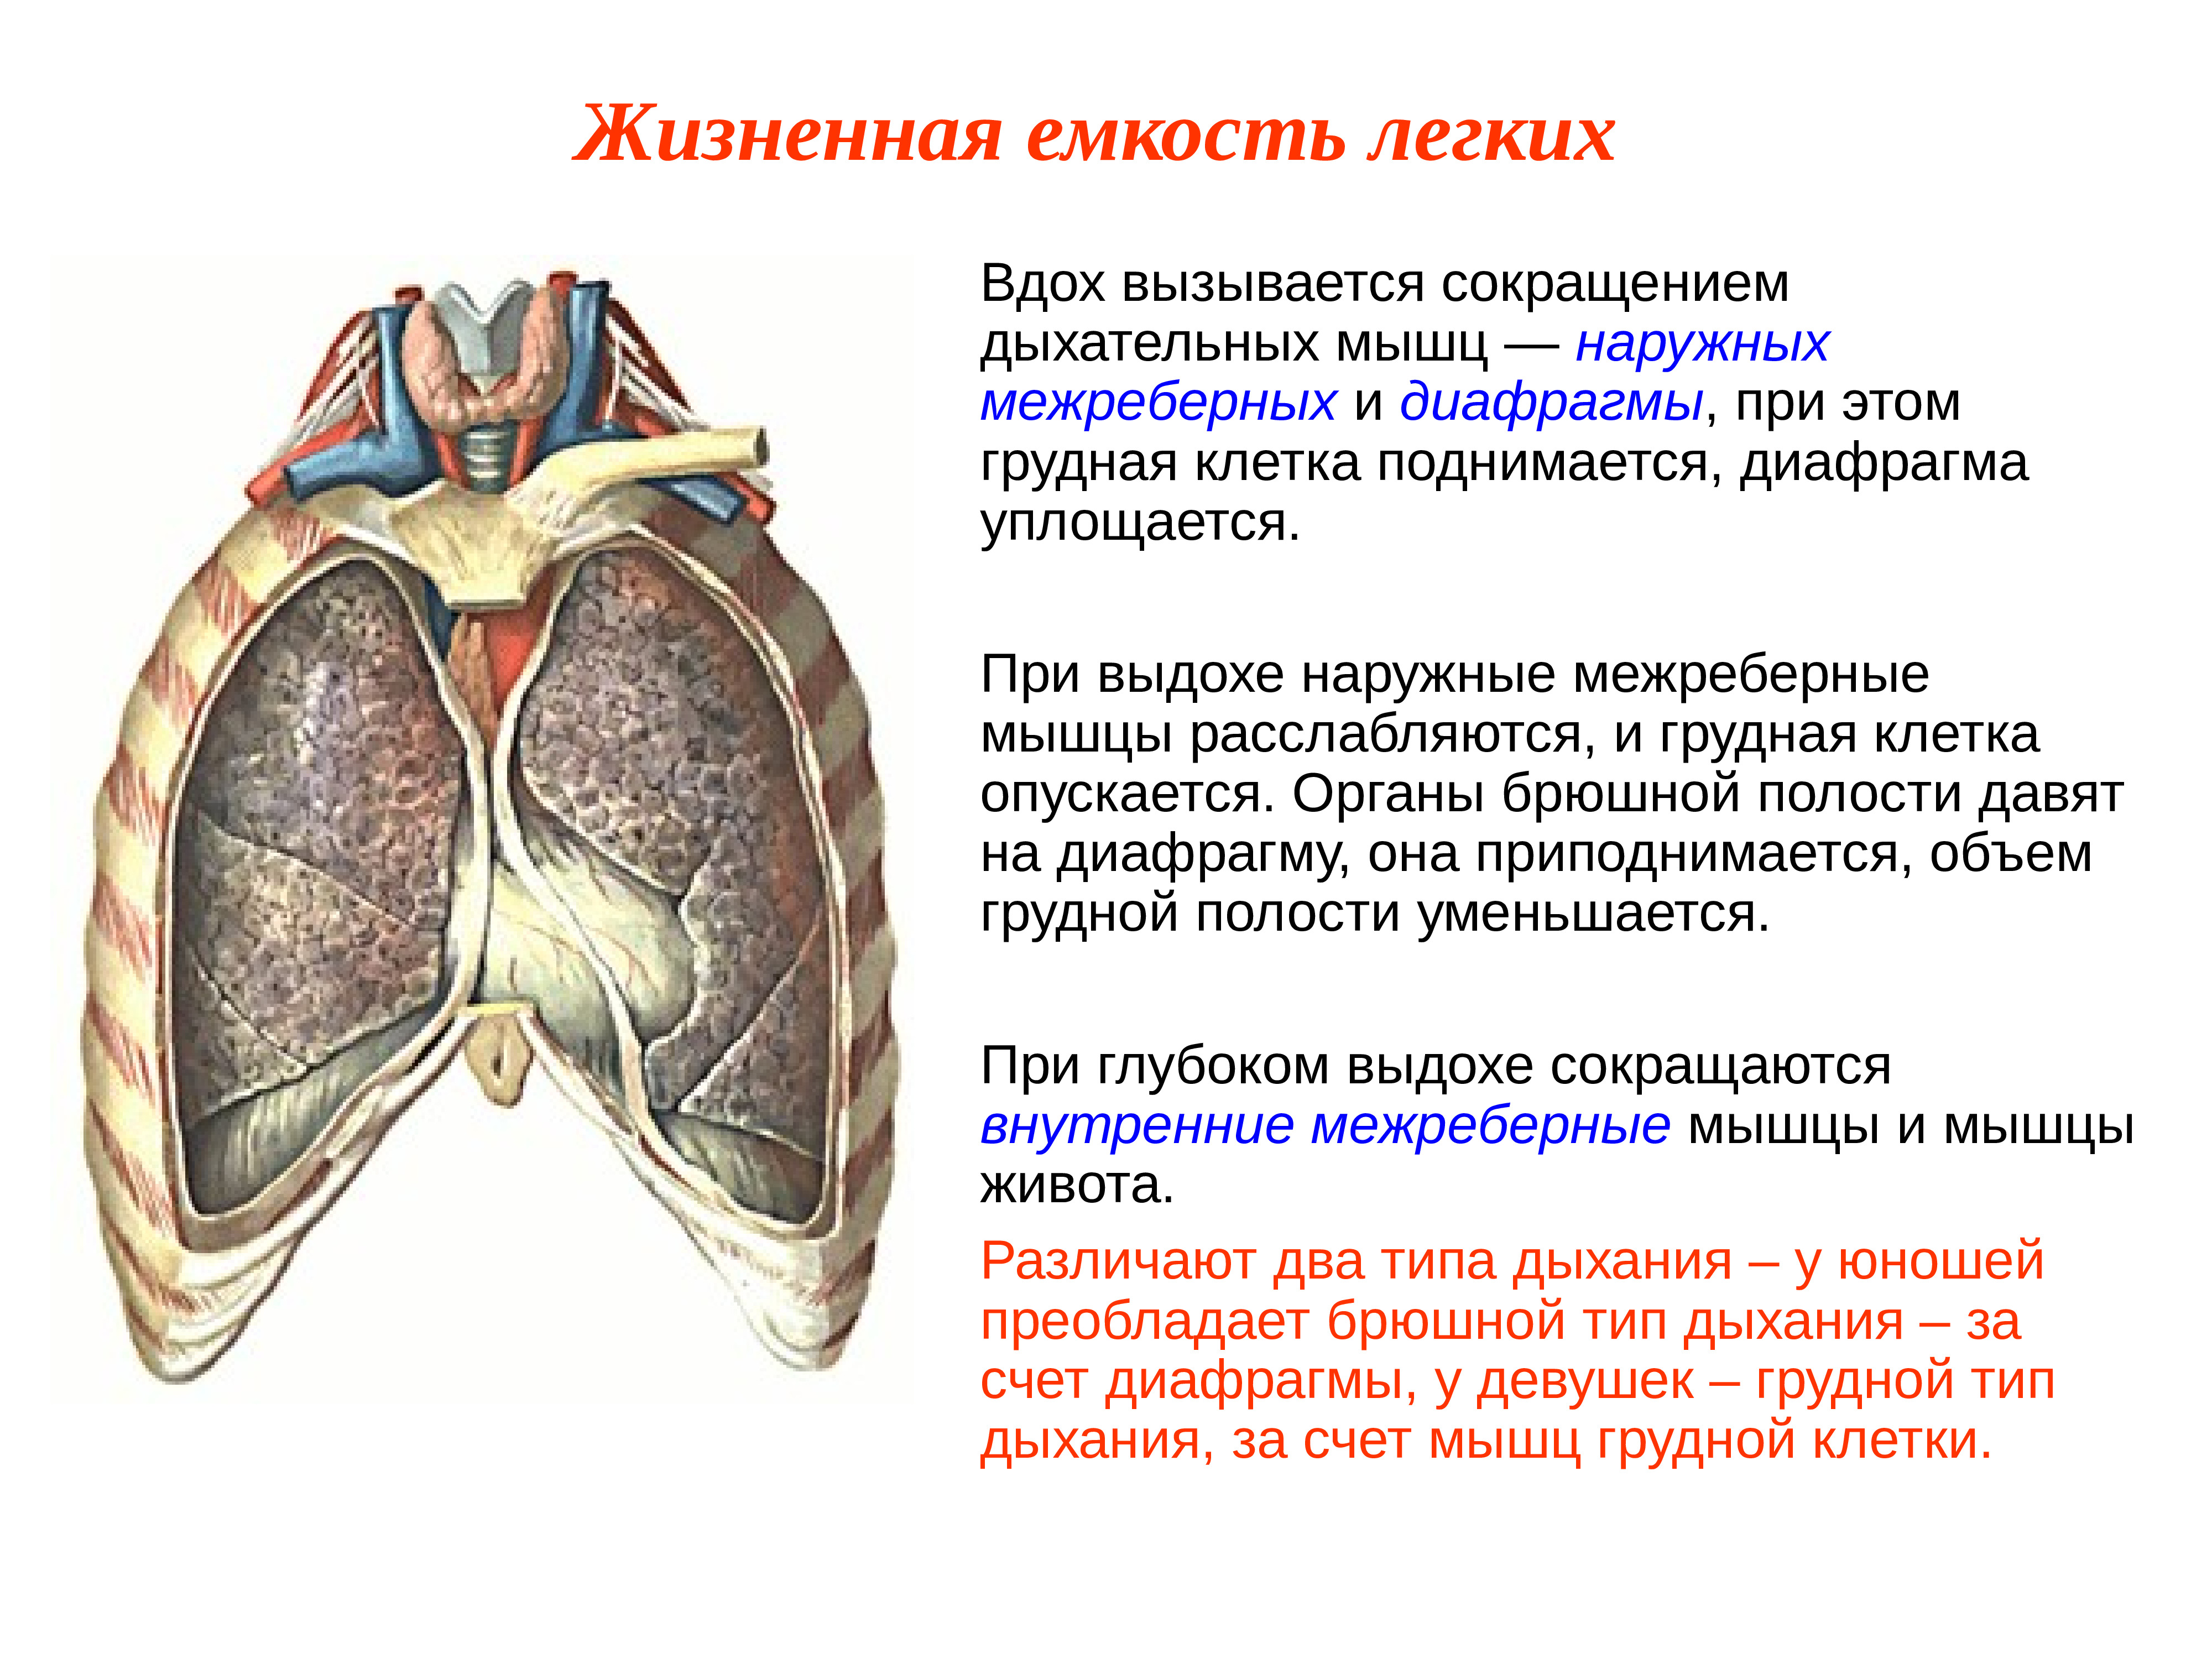 Грудная клетка при вдохе приподнимается. Механизм дыхания жизненная ёмкость лёгких. Дыхательная функция грудной клетки. Легочная мышца. Мышцы легких.